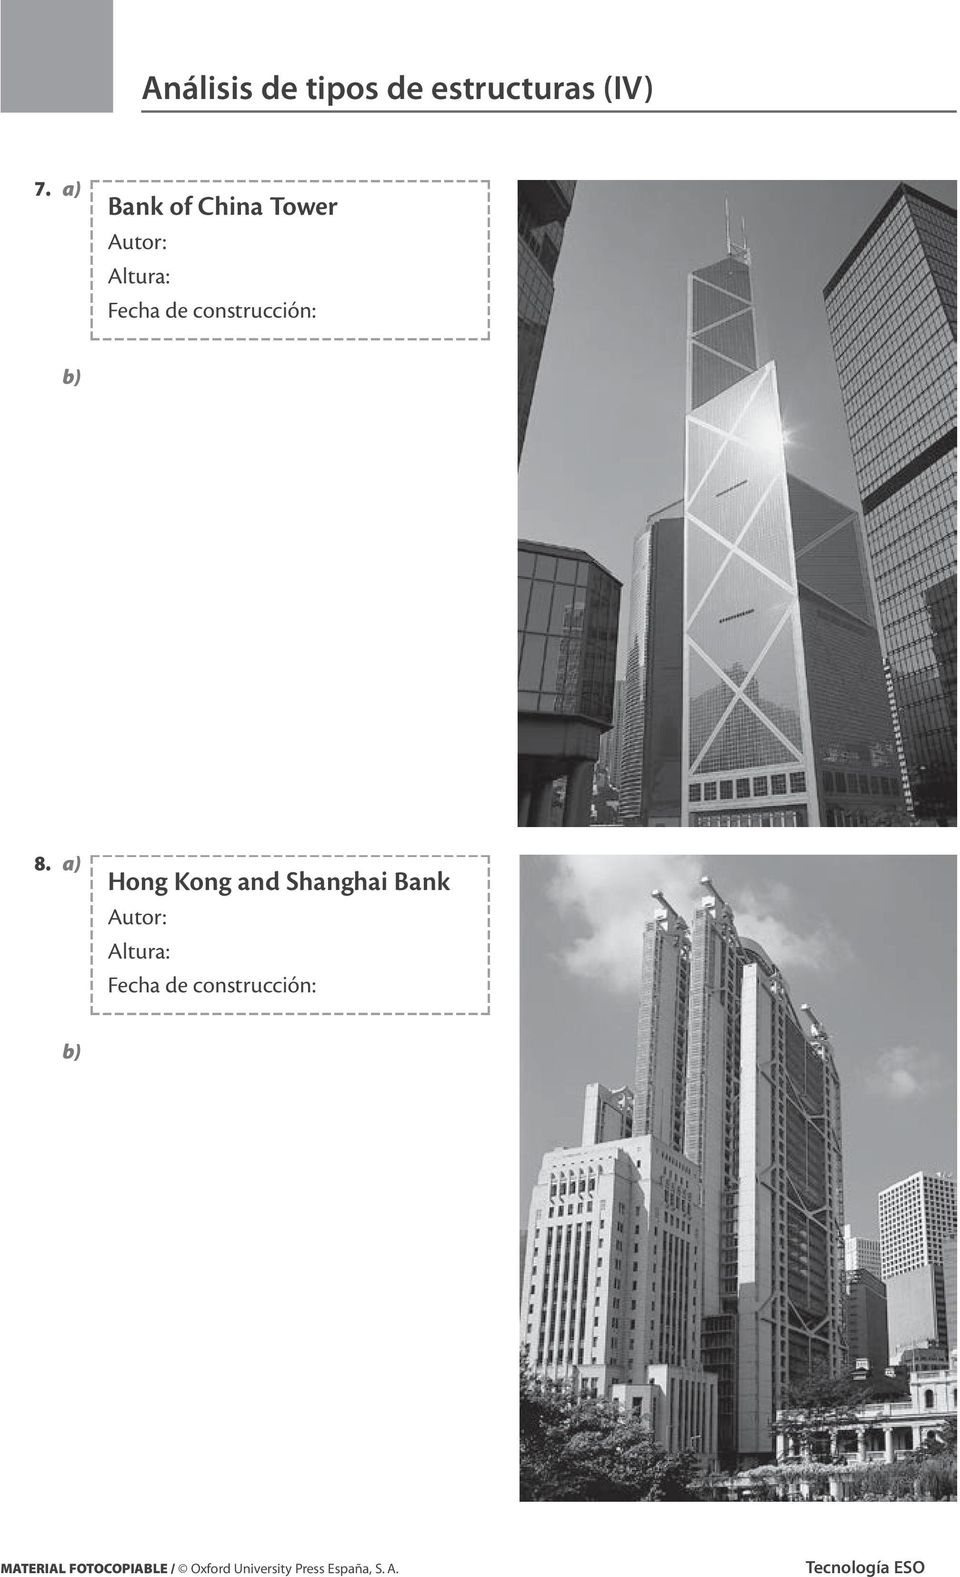 a) Hong Kong and Shanghai Bank MATERIAL